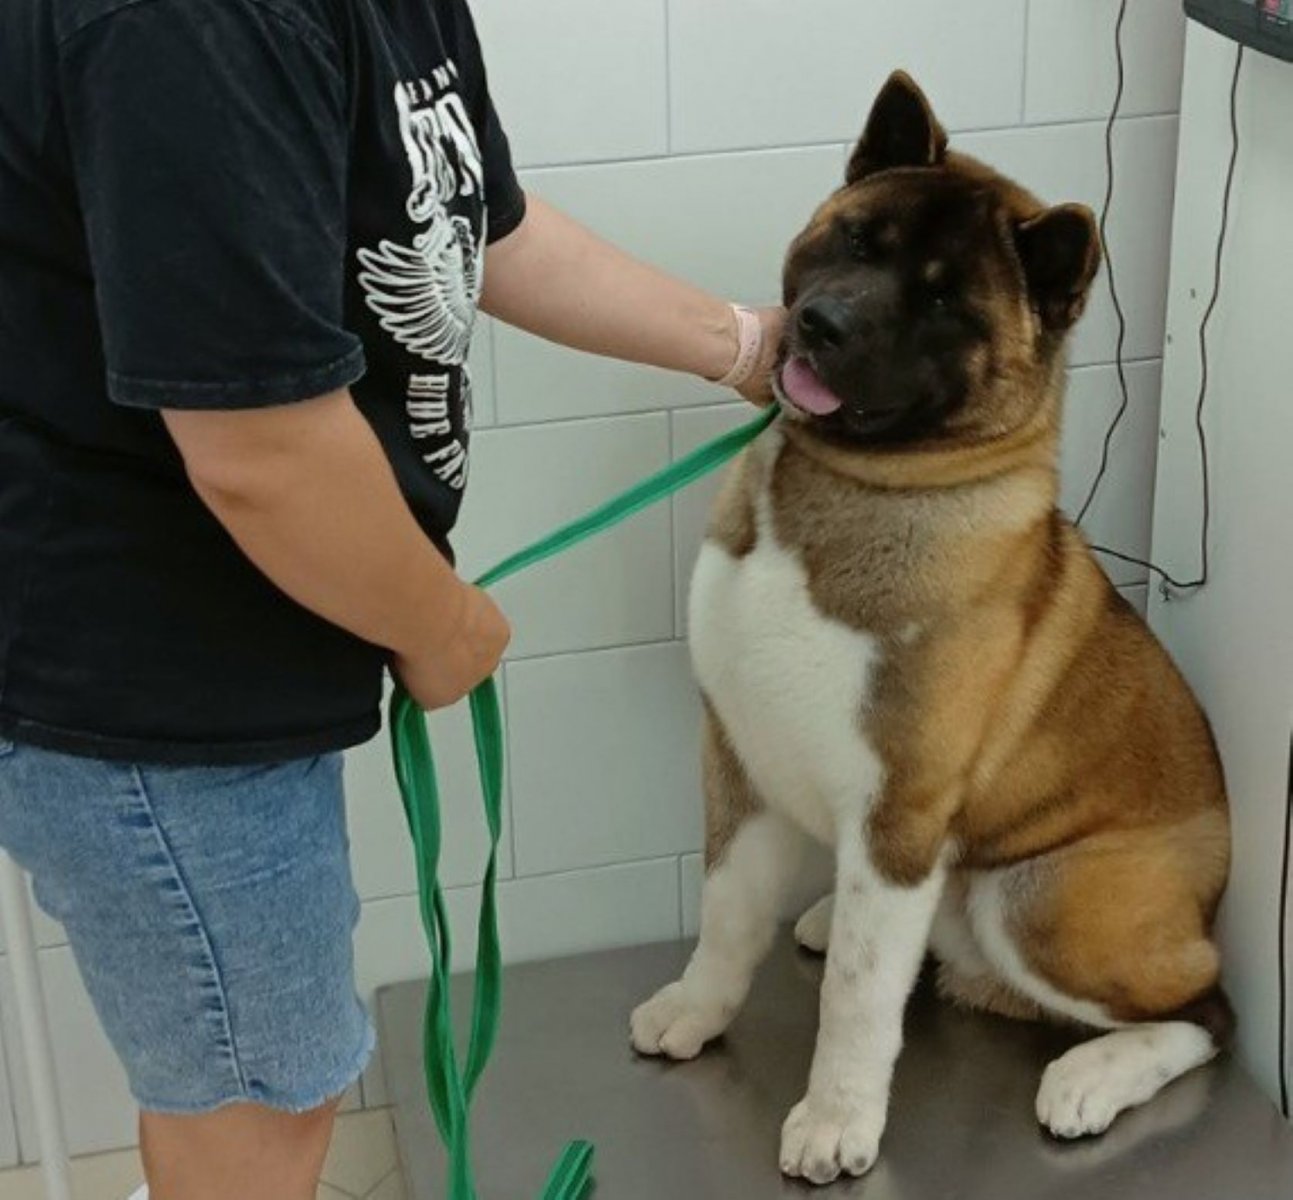 В Люберцах ветеринары вылечили пса Вируса после укуса змеи